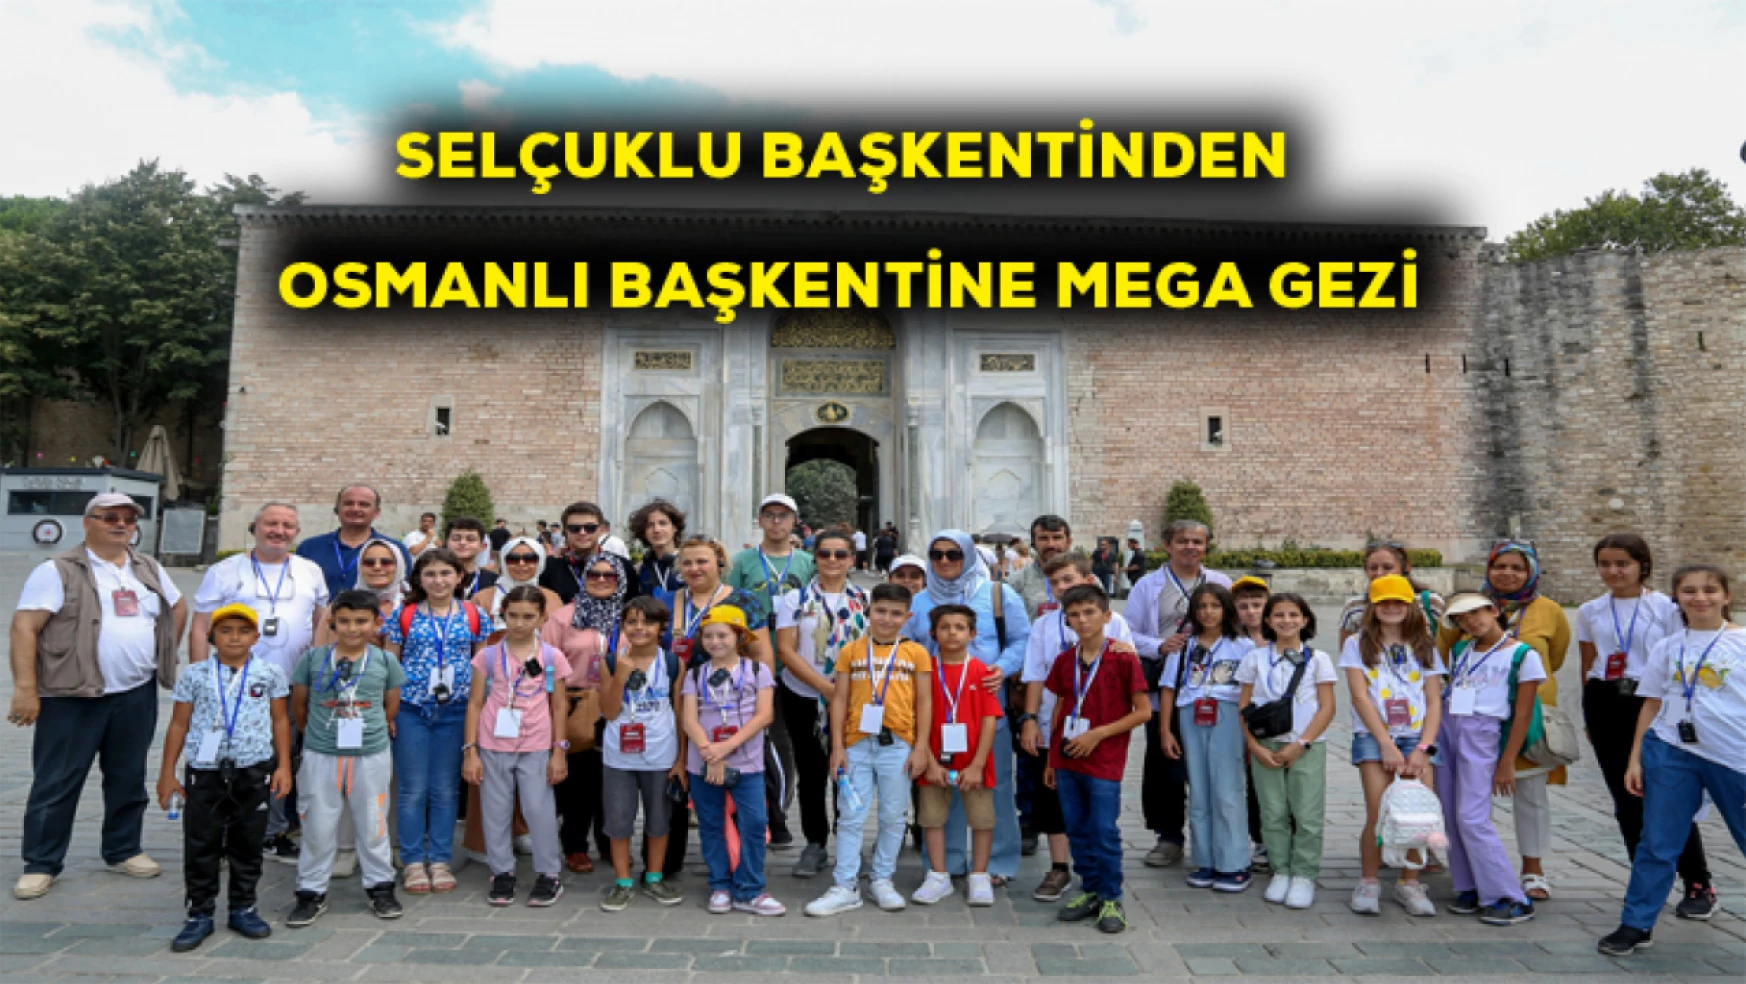 Selçuklu başkentinden Osmanlı başkentine MEGA gezi